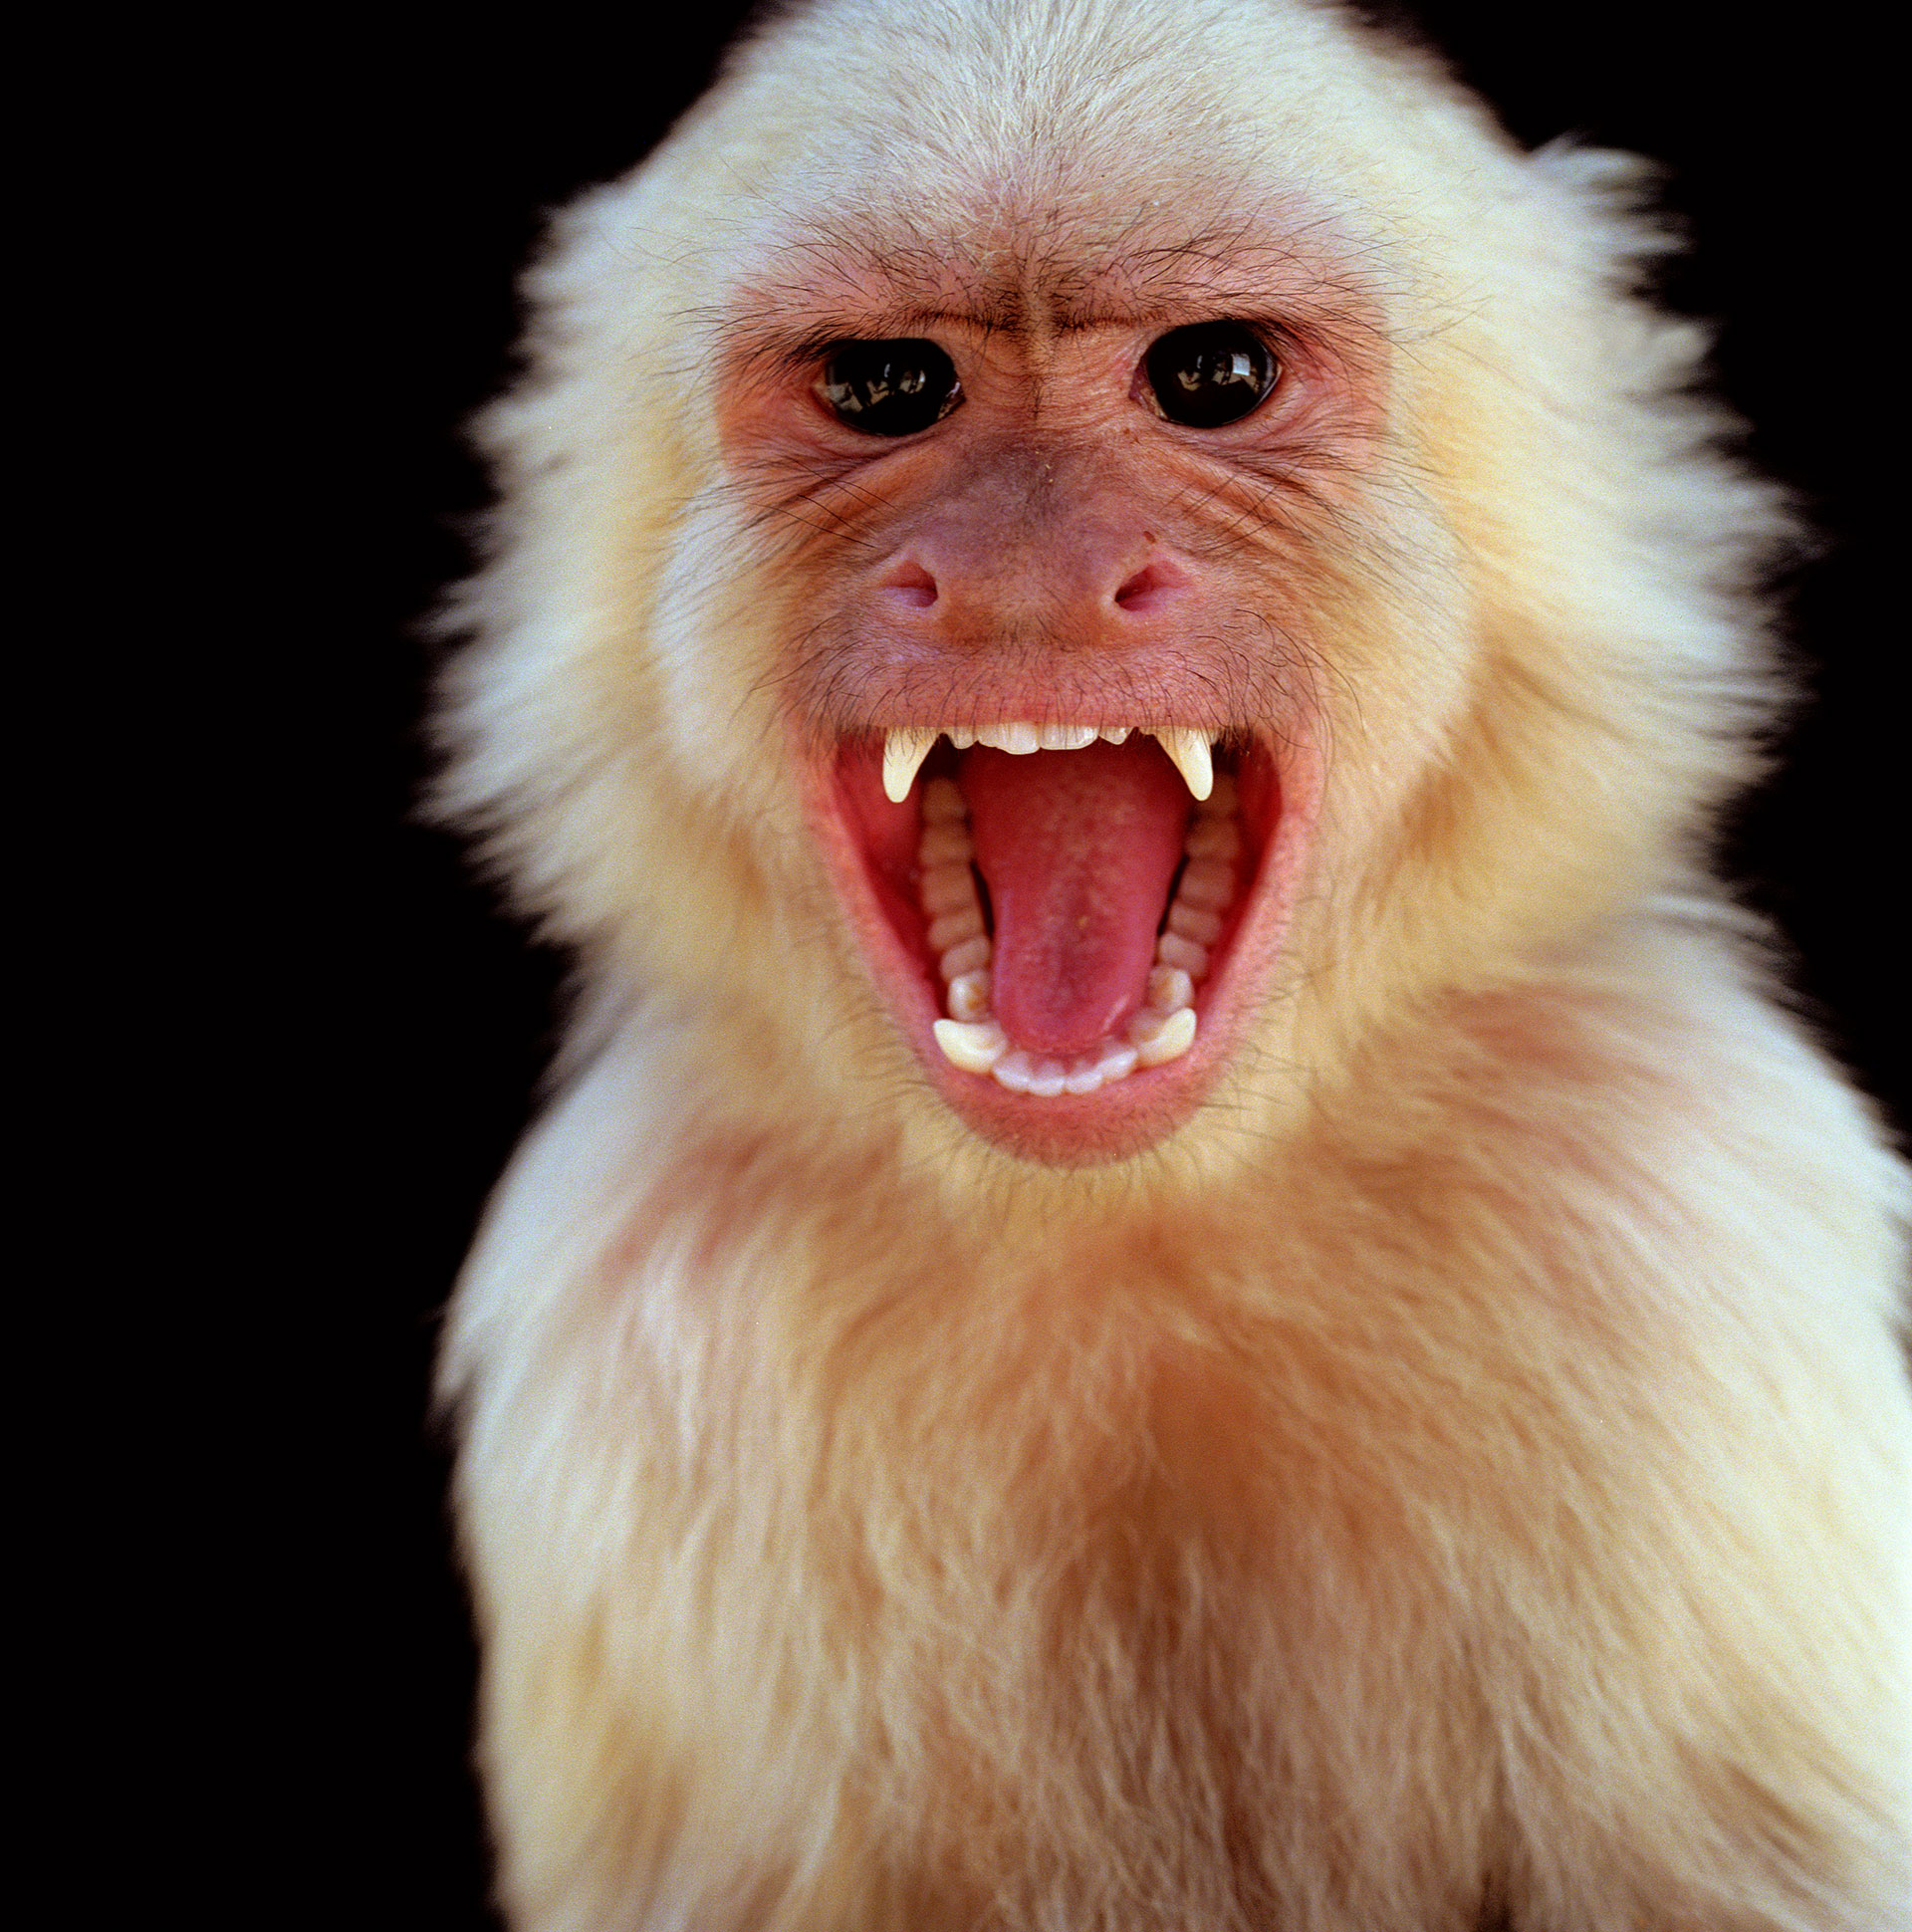 "En general, se produce en los animales, en los primates (monos), pero se cree que el reservorio son peque├▒os roedores como las ardillas, desde las cuales se transmiten al mono y despu├Еs al hombre, ya que se invade mucho el h├Аbitat de estos animales", dijo a Infobae Teijeiro
(Getty Images)